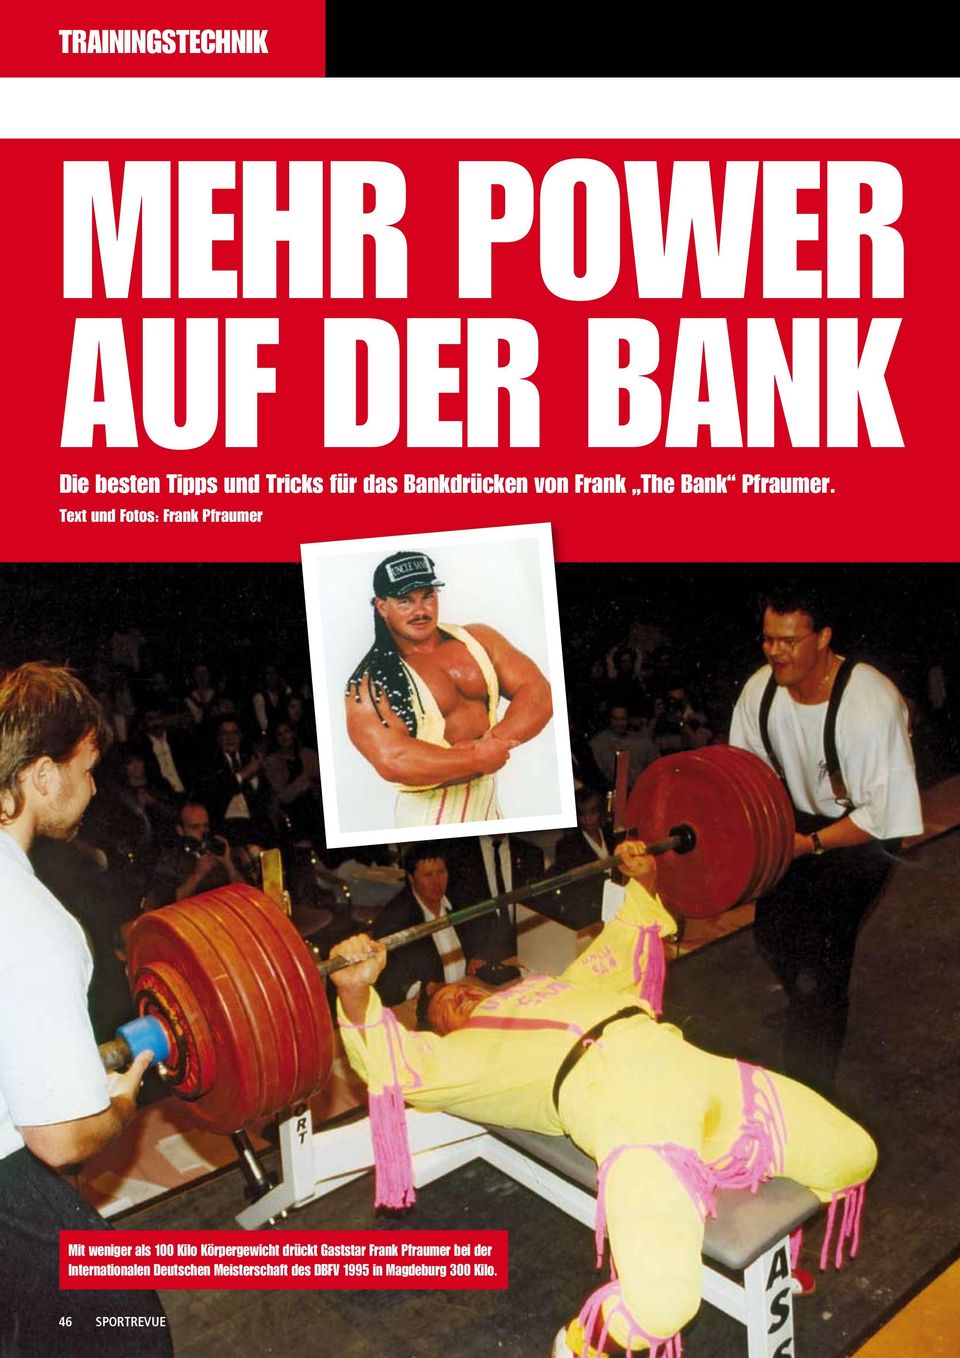 Text und Fotos: Frank Pfraumer Mit weniger als 100 Kilo Körpergewicht